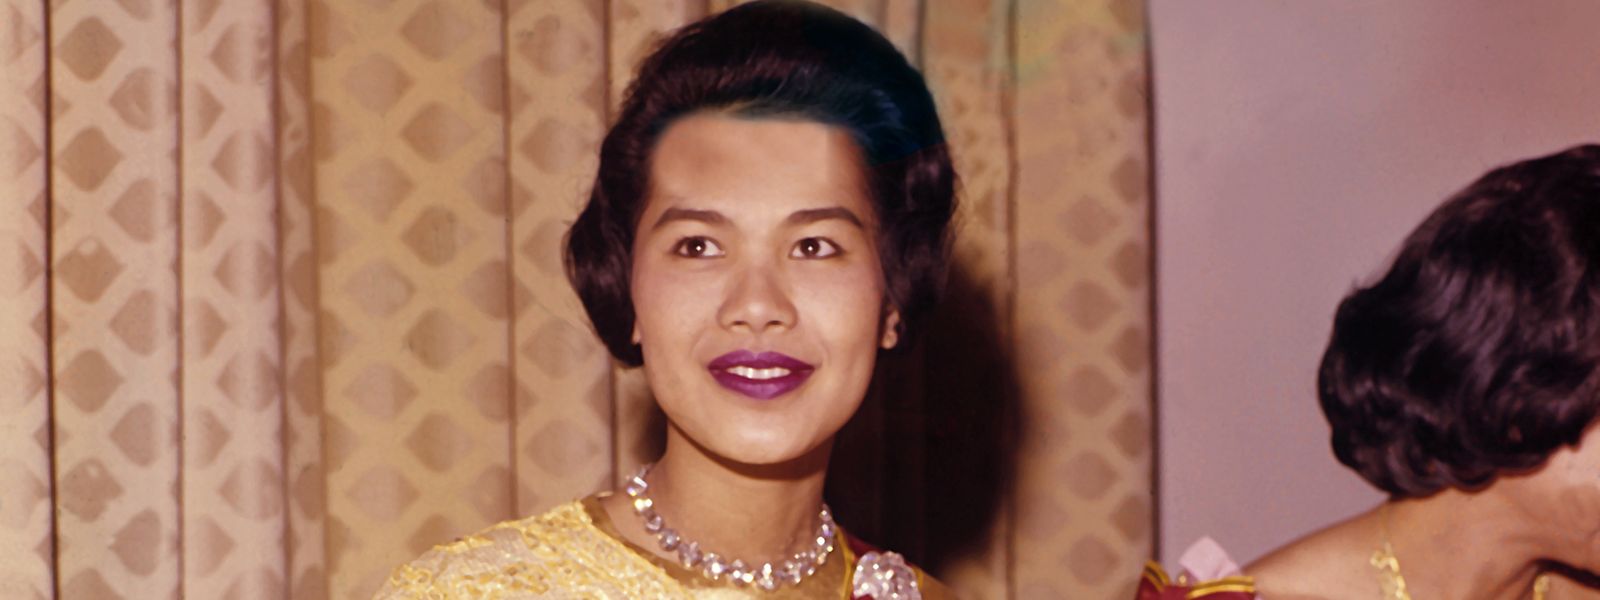 Die thailändische Königin Sirikit im Jahr 1960 während eines Empfangs in Deutschland.  